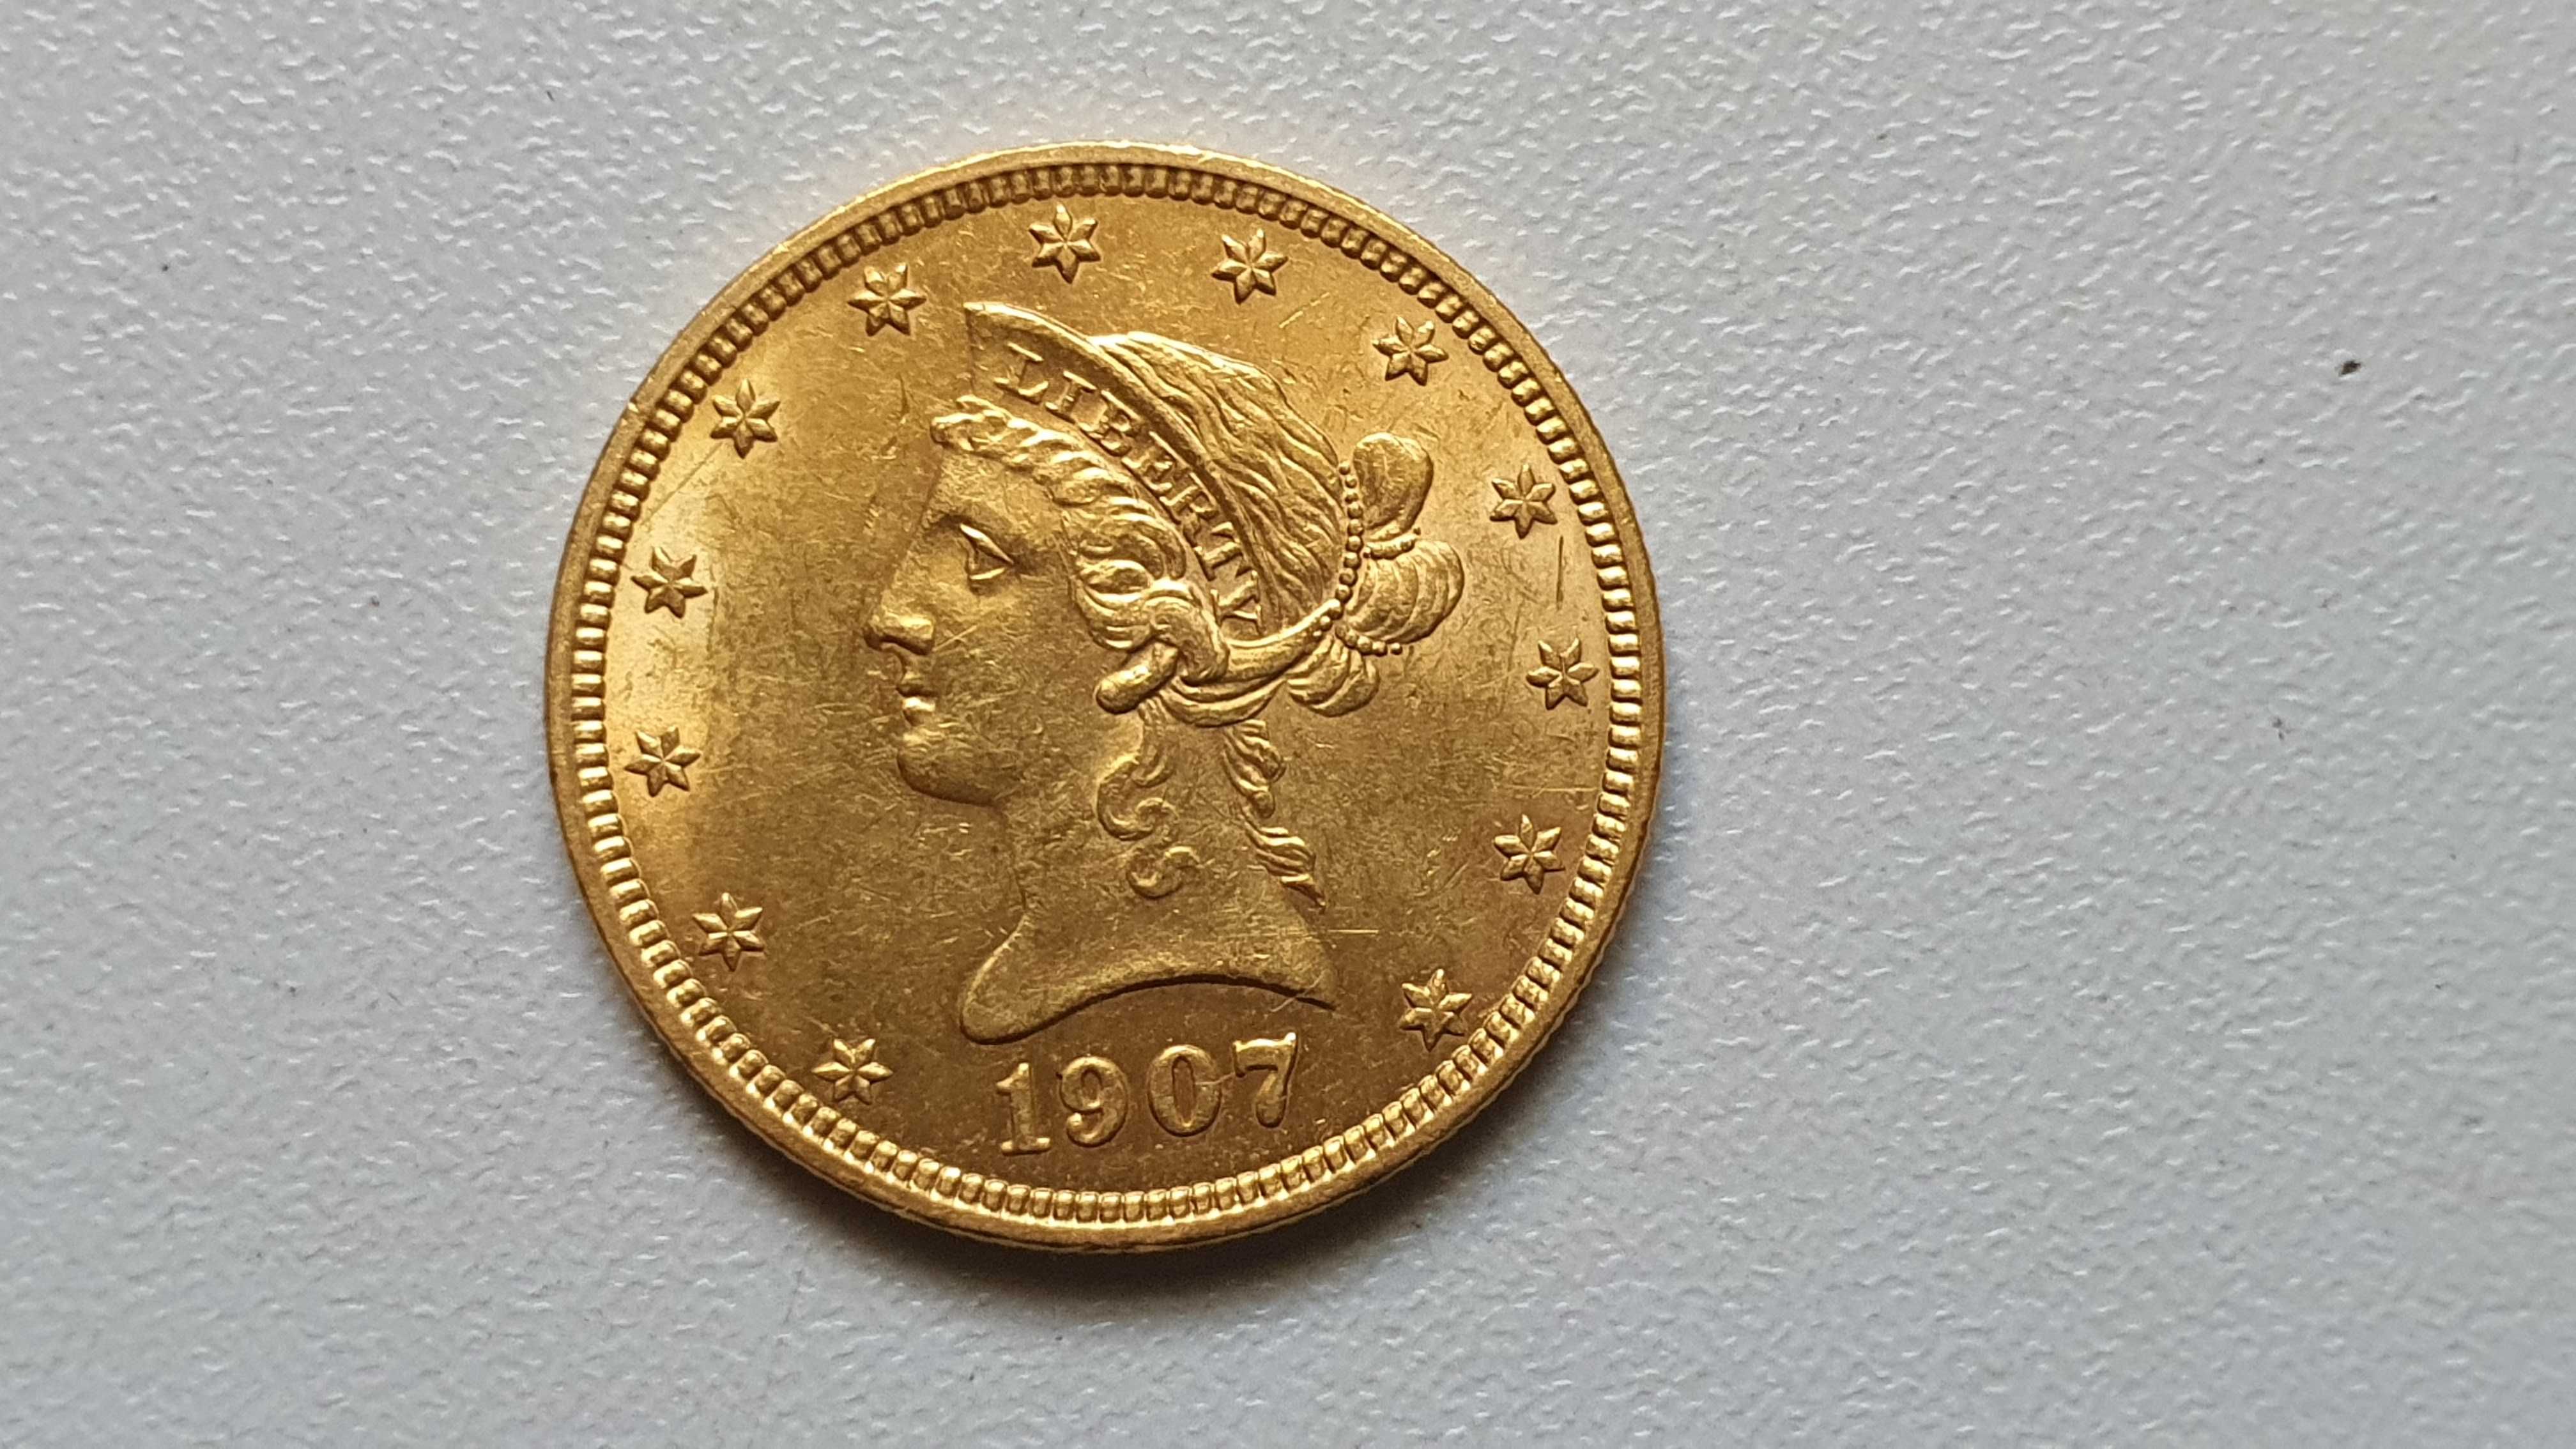 10 dolarów 1907r - złoto - moneta kolekcjonerska